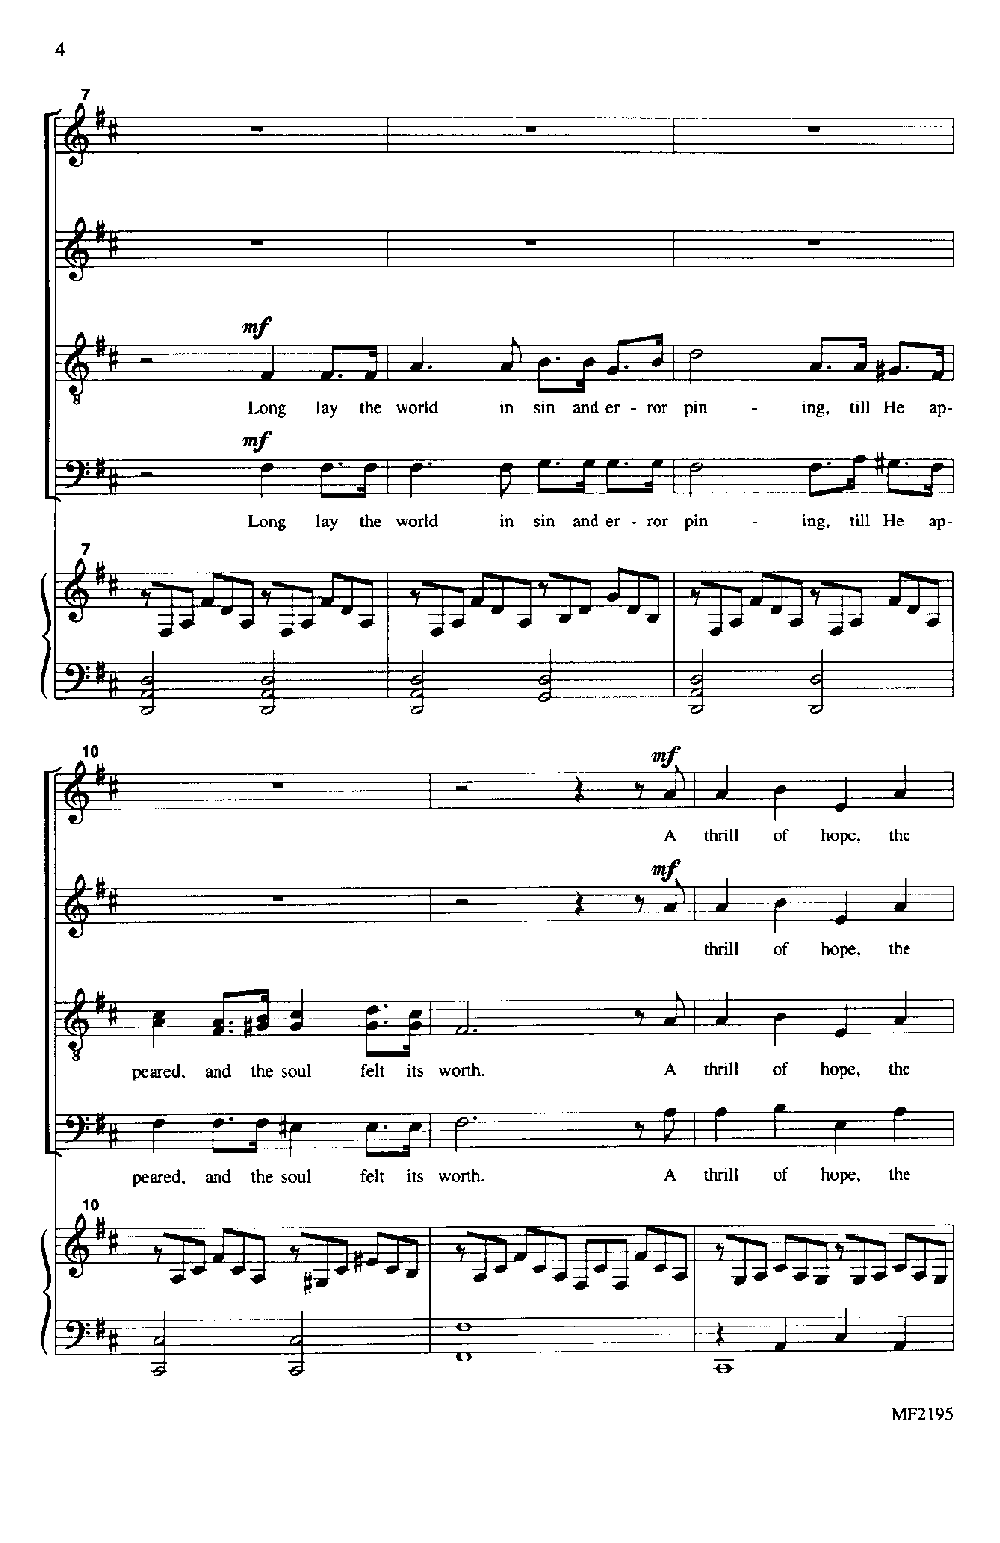 O Holy Night - Nsync (A Capella), PDF, Teoria da Música